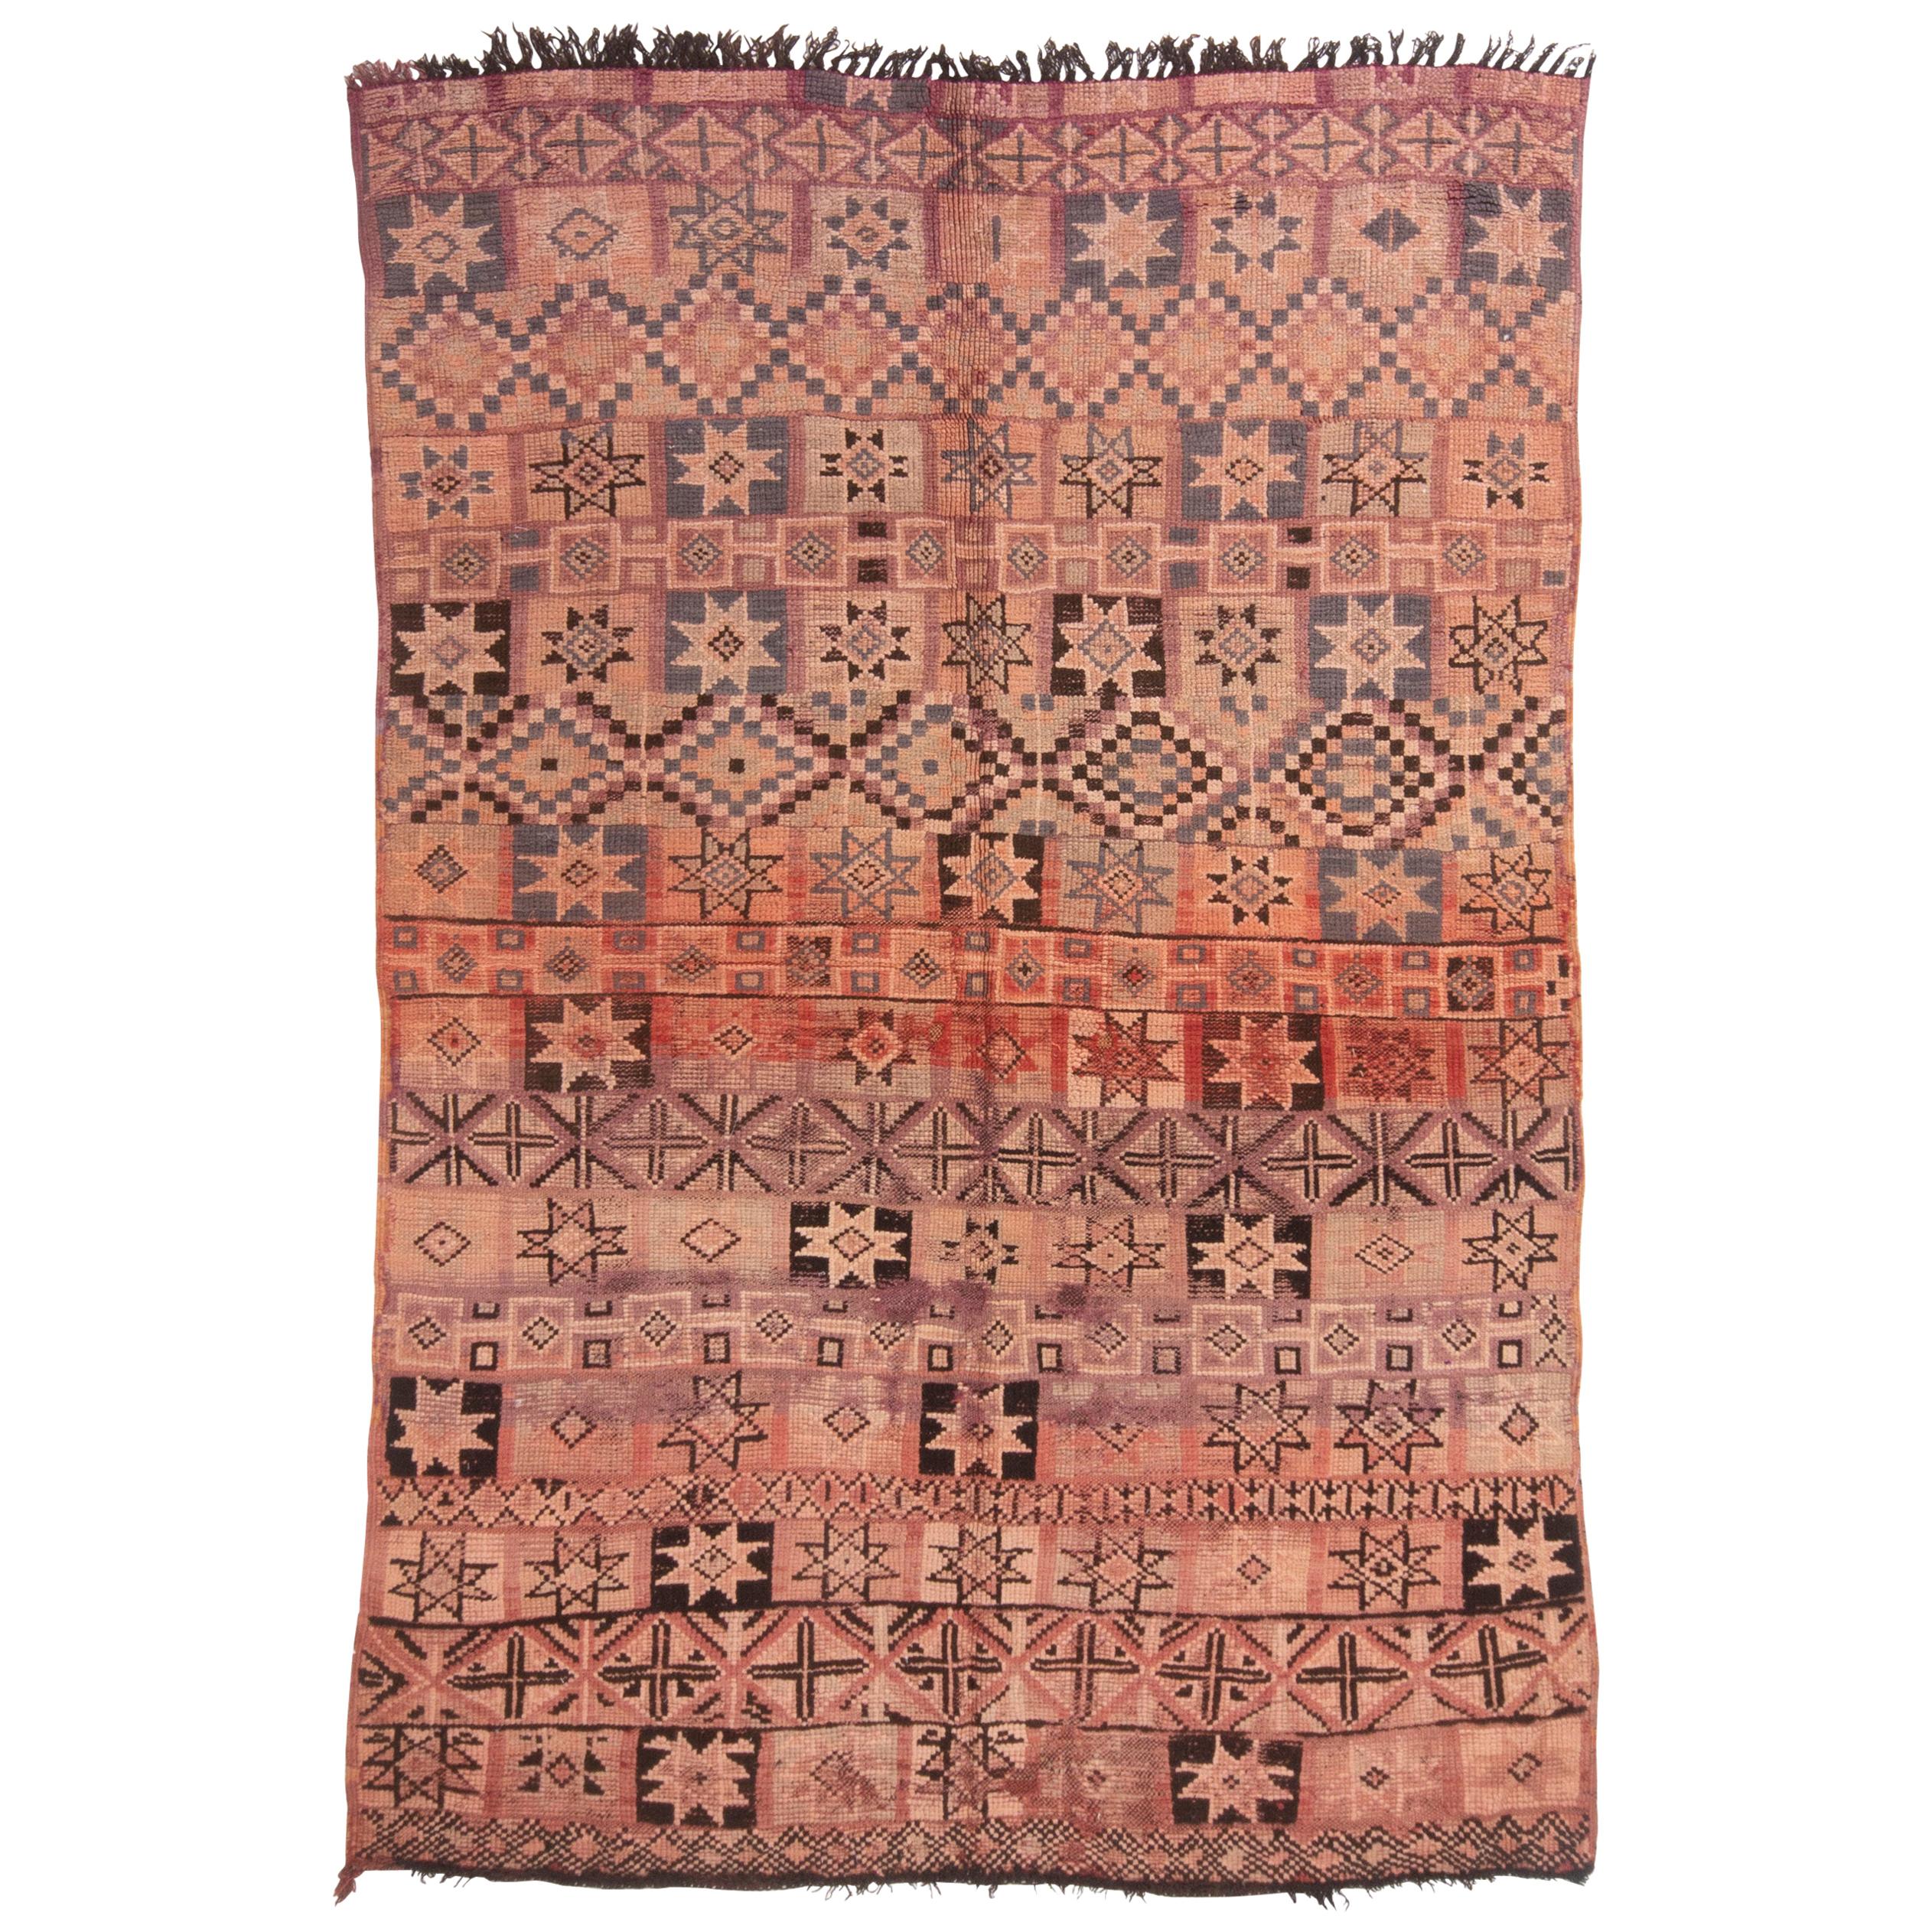 1950s Vintage Midcentury Moroccan Rug Beige Pink Tribal Geometric Pattern